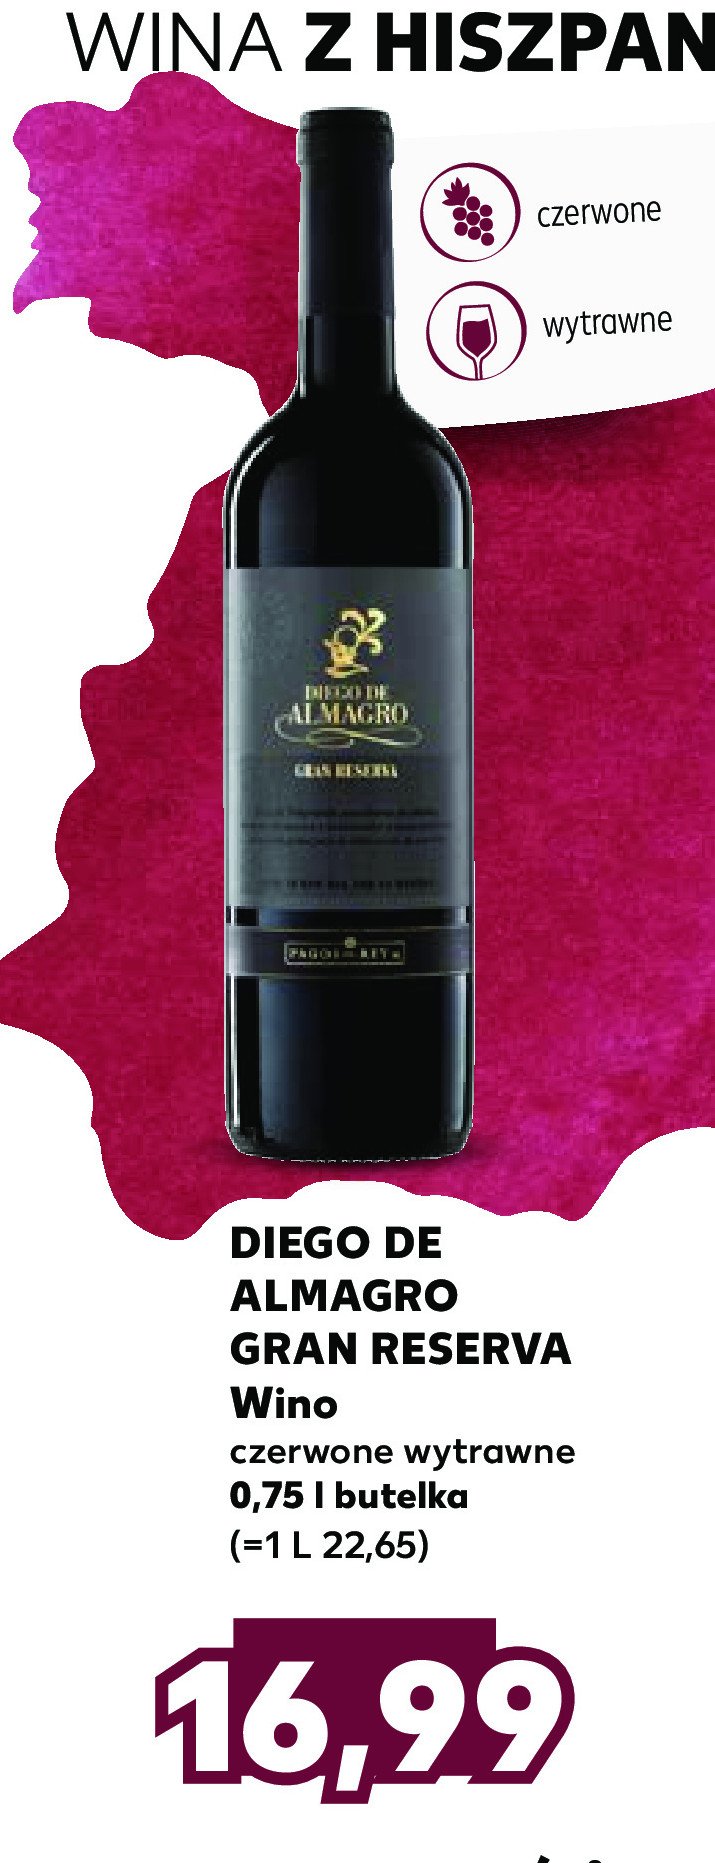 Wino DIEGO DE ALMAGRO GRAN RESERVA promocja